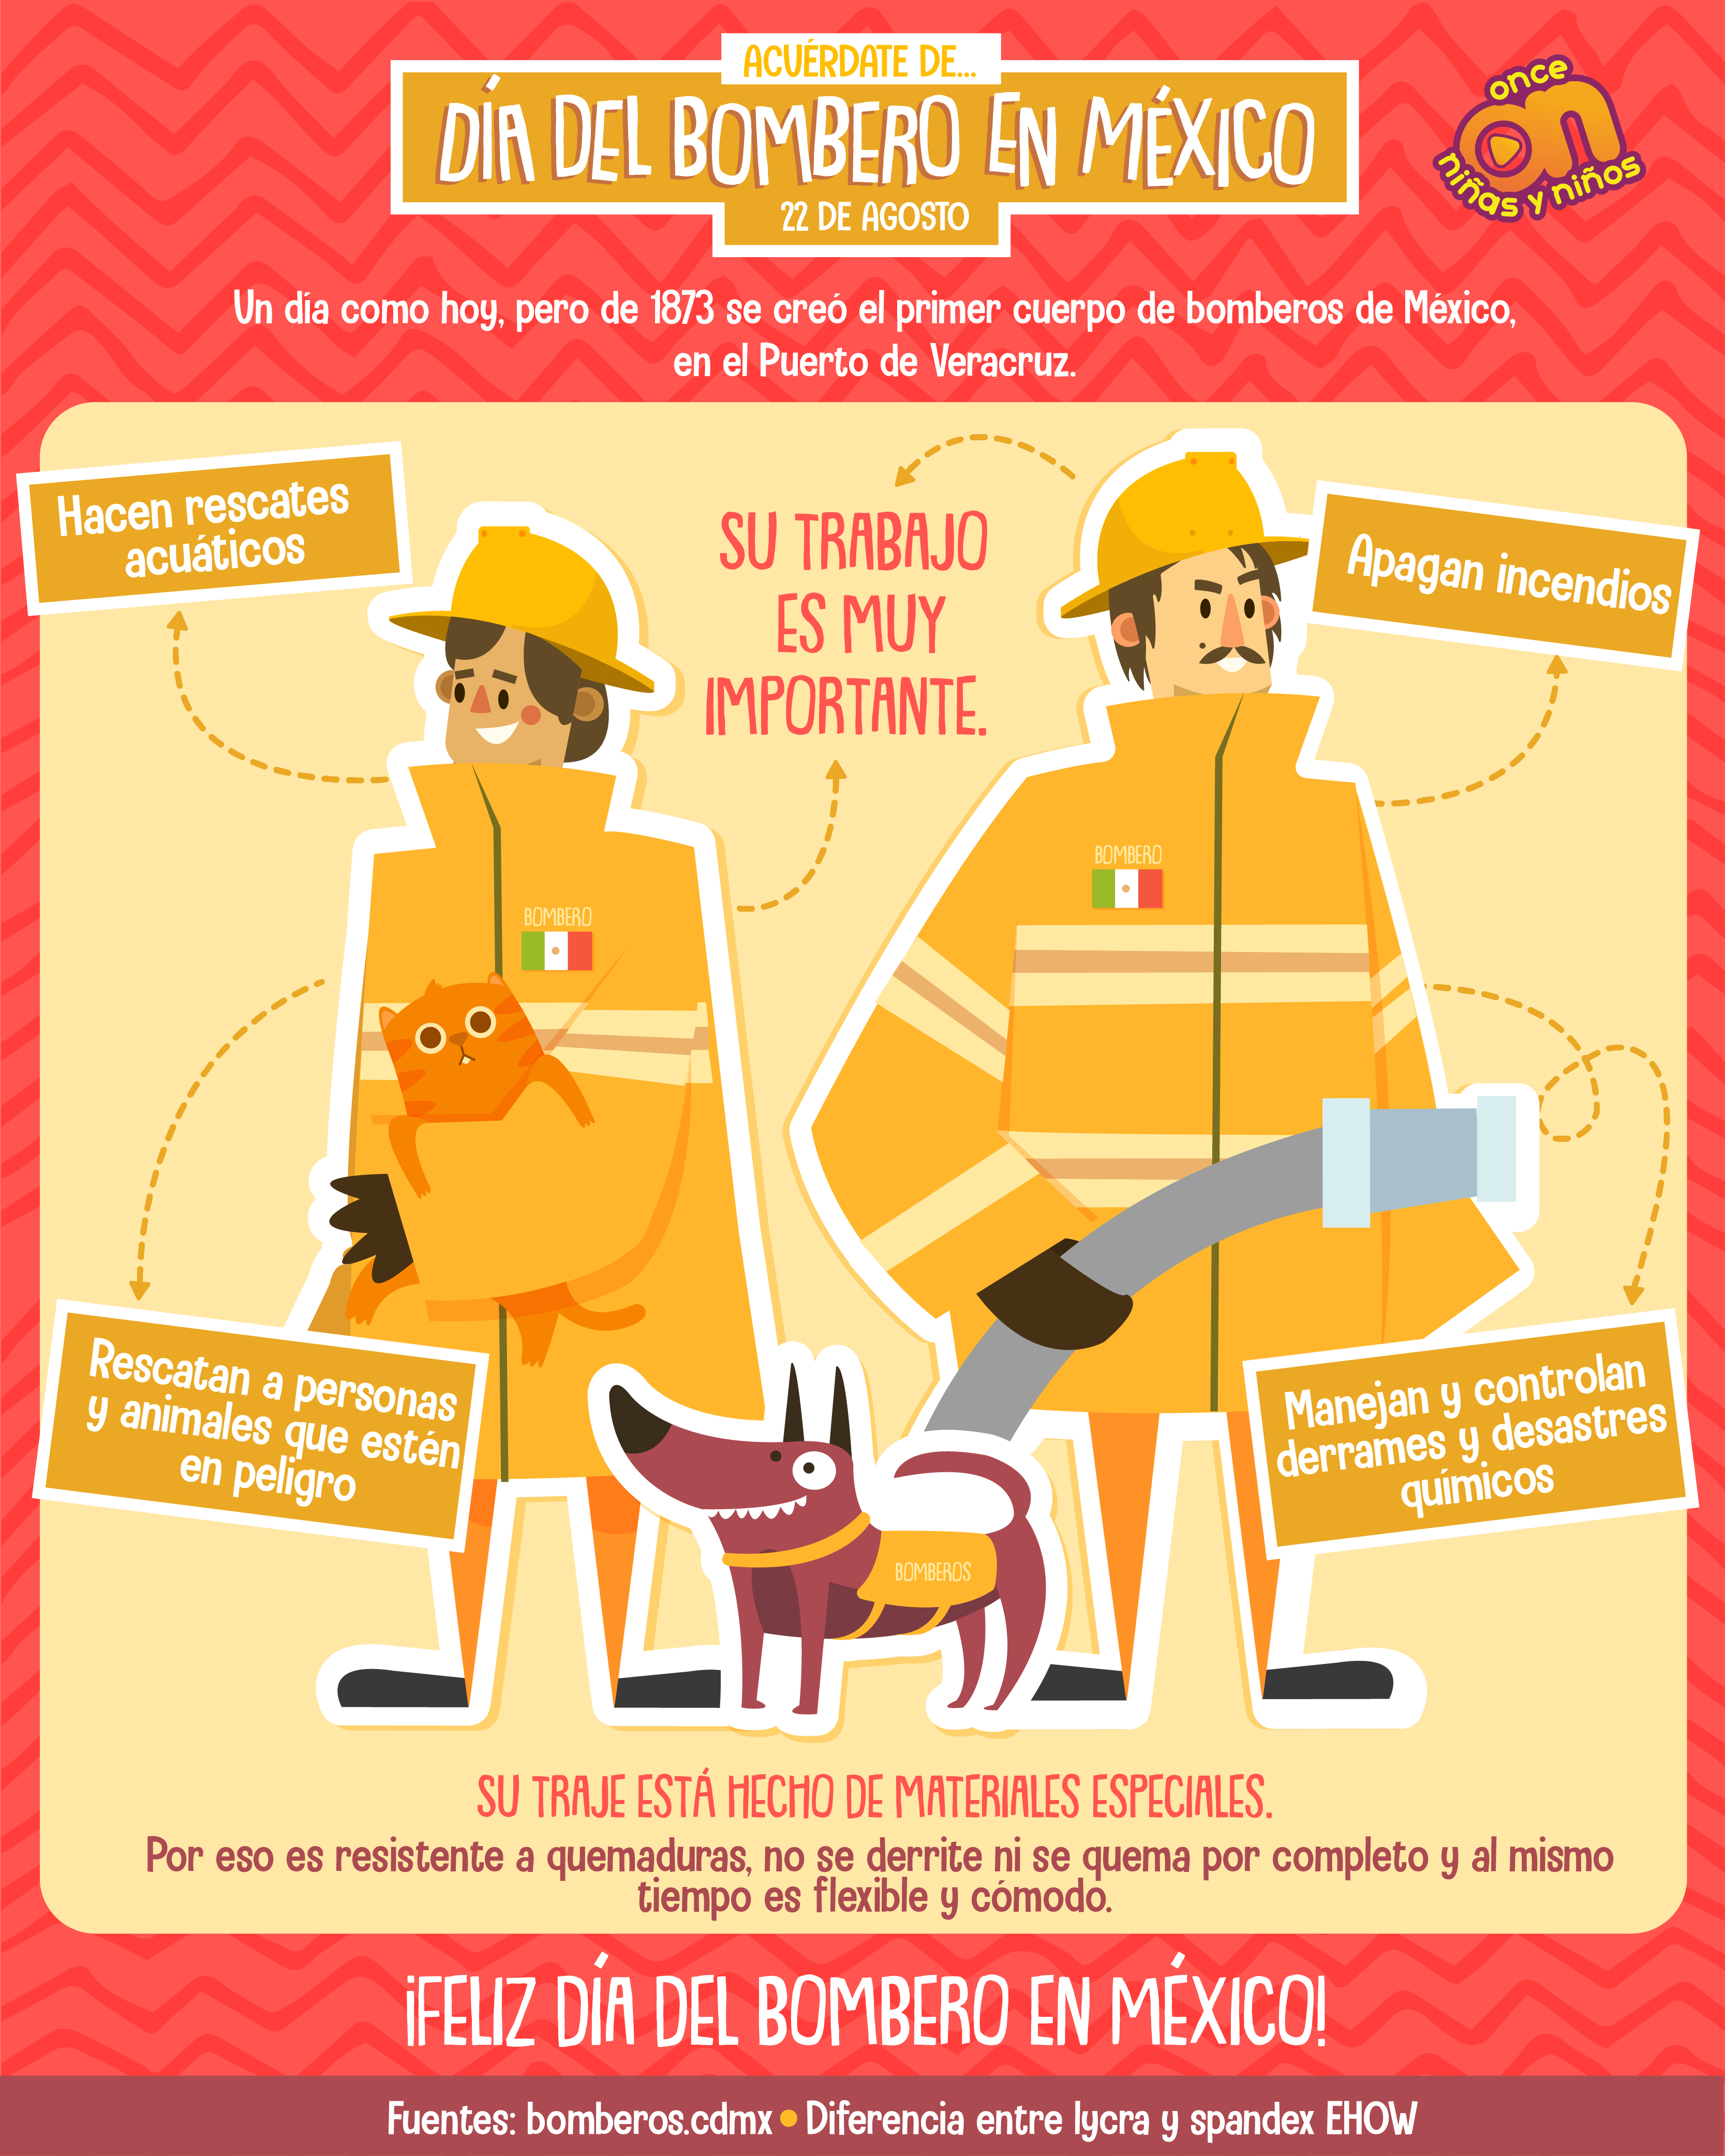 Acuérdate de...
Día del bombero en México
Once Niñas y Niños 